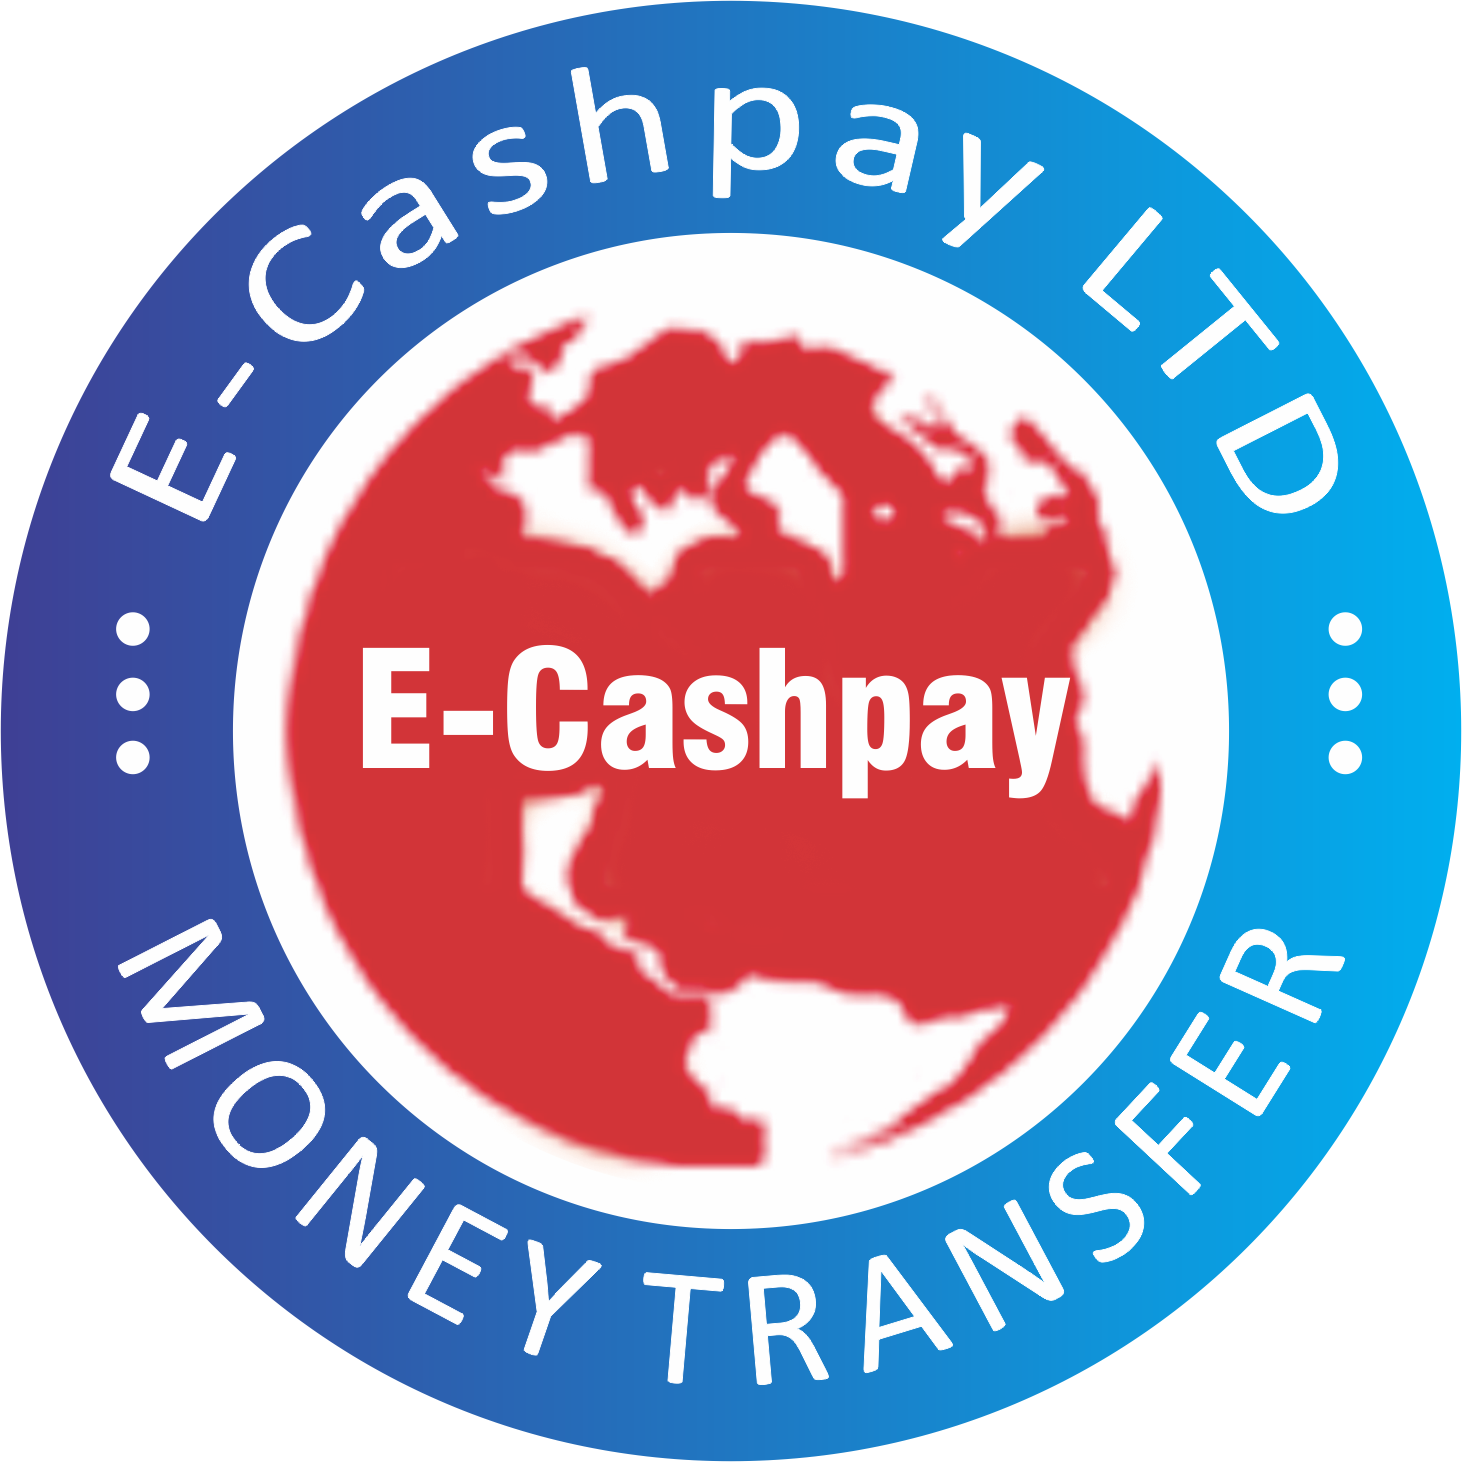 E-cashpay